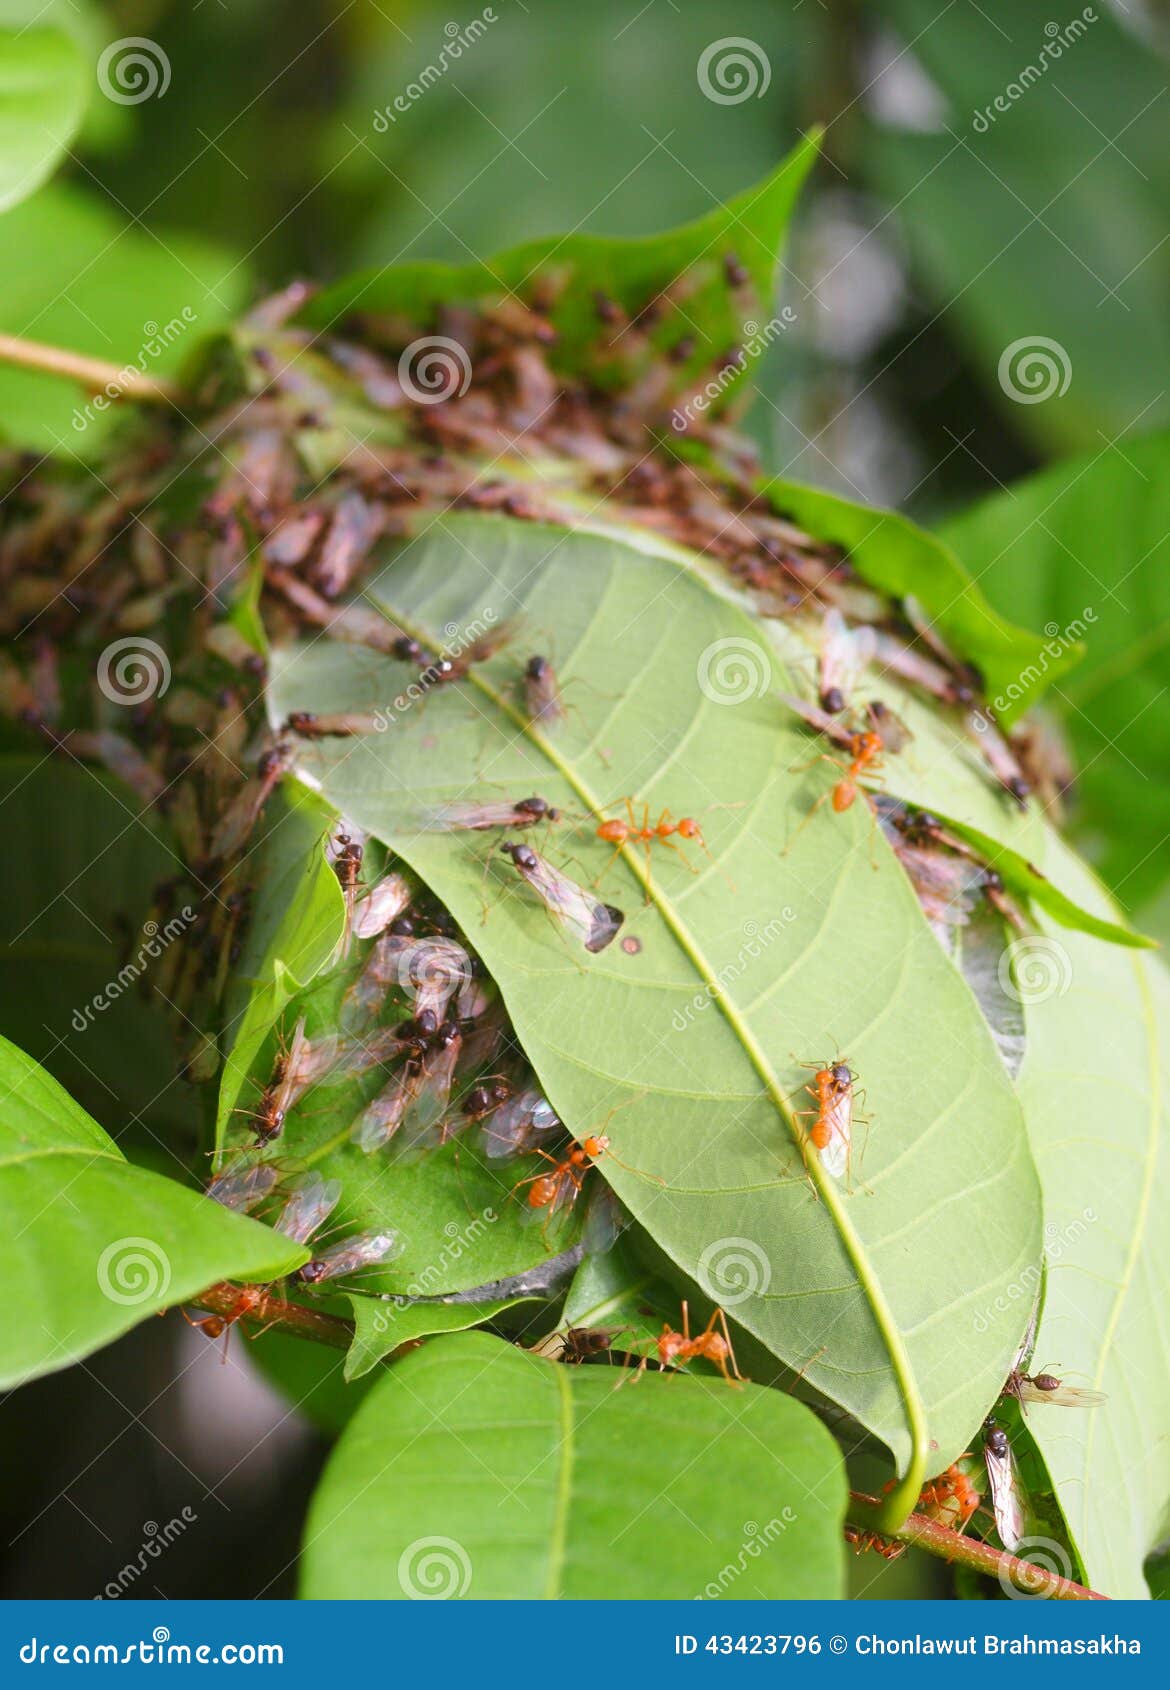 Många gör till drottning röda orange myror som omformas från rött för att svärta färg med genomskinliga vingar som är klara att flyga spring runt om ett litet rött myrarede som byggs från gröna sidor i en buske i tropisk natur under morgonsolljus